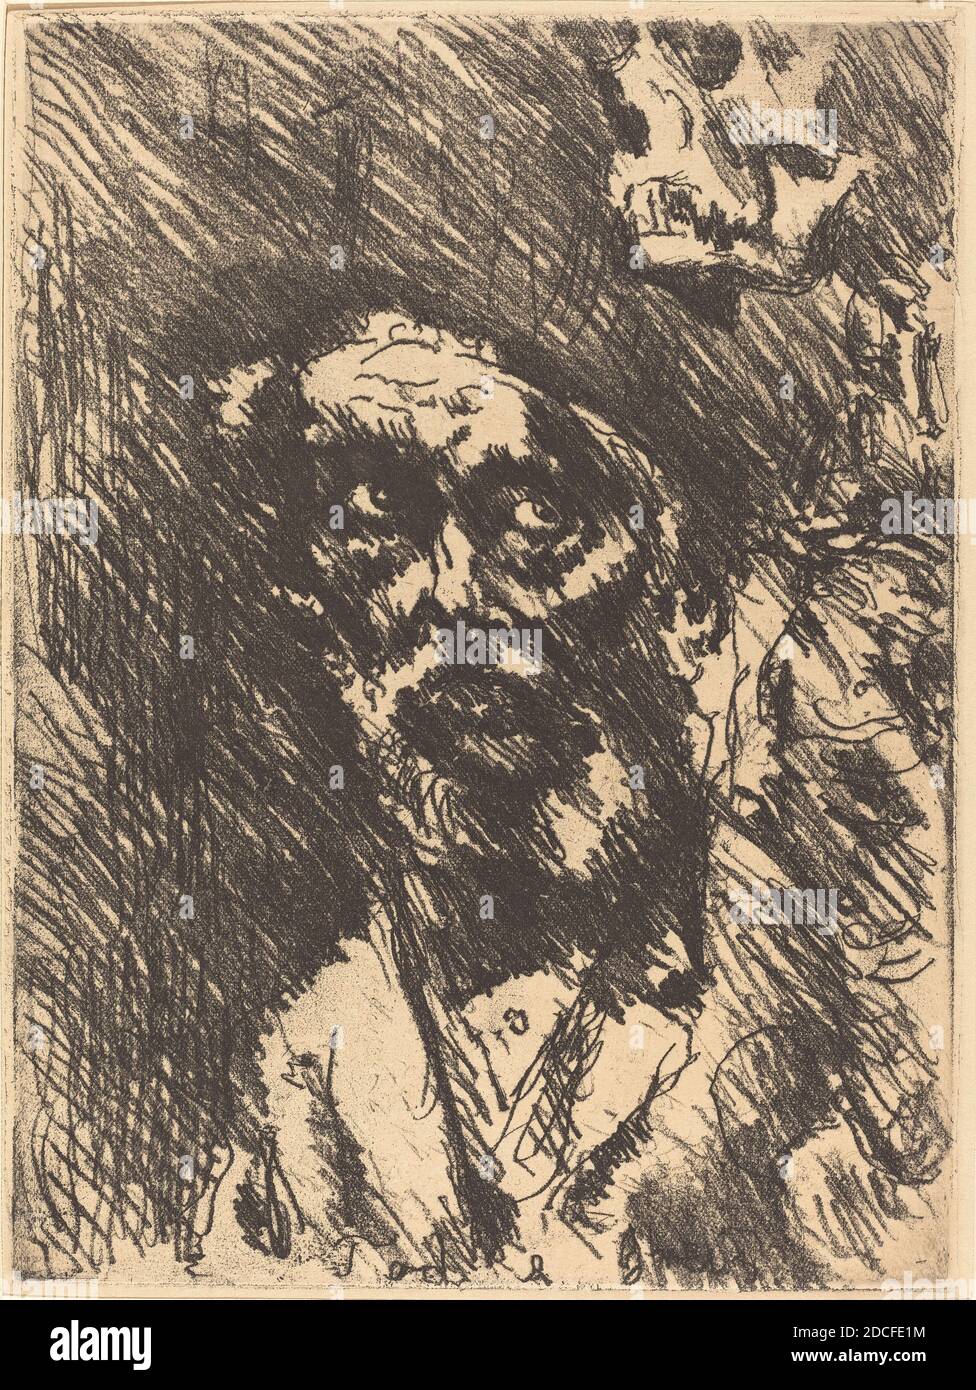 Lovis Corinth, (artiste), allemand, 1858 - 1925, Tod und Greis (Death and the Old Man), Totentanz (danse de la mort), (série), 1921 (publié en 1922), gravure en noir sur papier vélin, plaque: 23.8 x 17.6 cm (9 3/8 x 6 15/16 po.), feuille: 30 x 24 cm (11 13/16 x 9 7/16 po), cadeau à la mémoire de Sigbert H. Marcy et en l'honneur du 50e anniversaire de la Galerie nationale d'art Banque D'Images